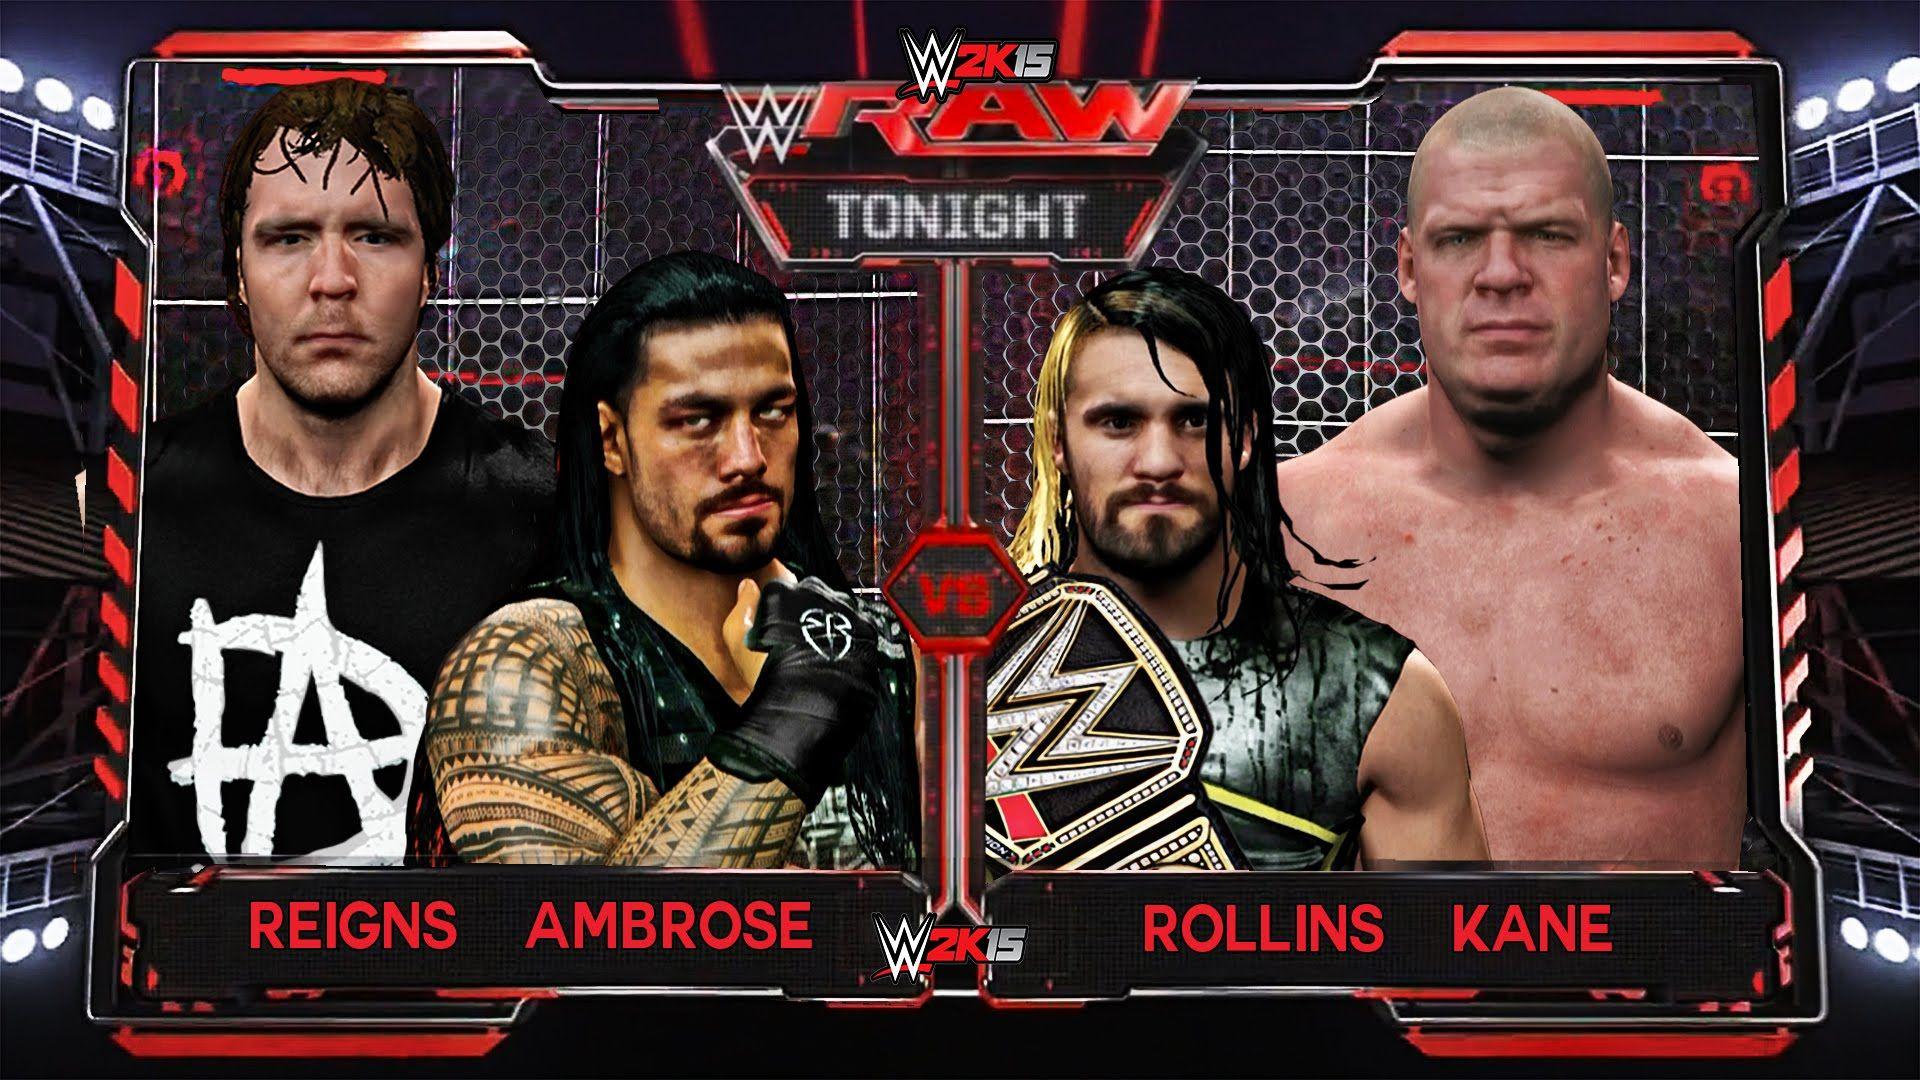 WWE RAW 6 1 15, Roman Reigns & Dean Ambrose Vs Seth Rollins & Kane